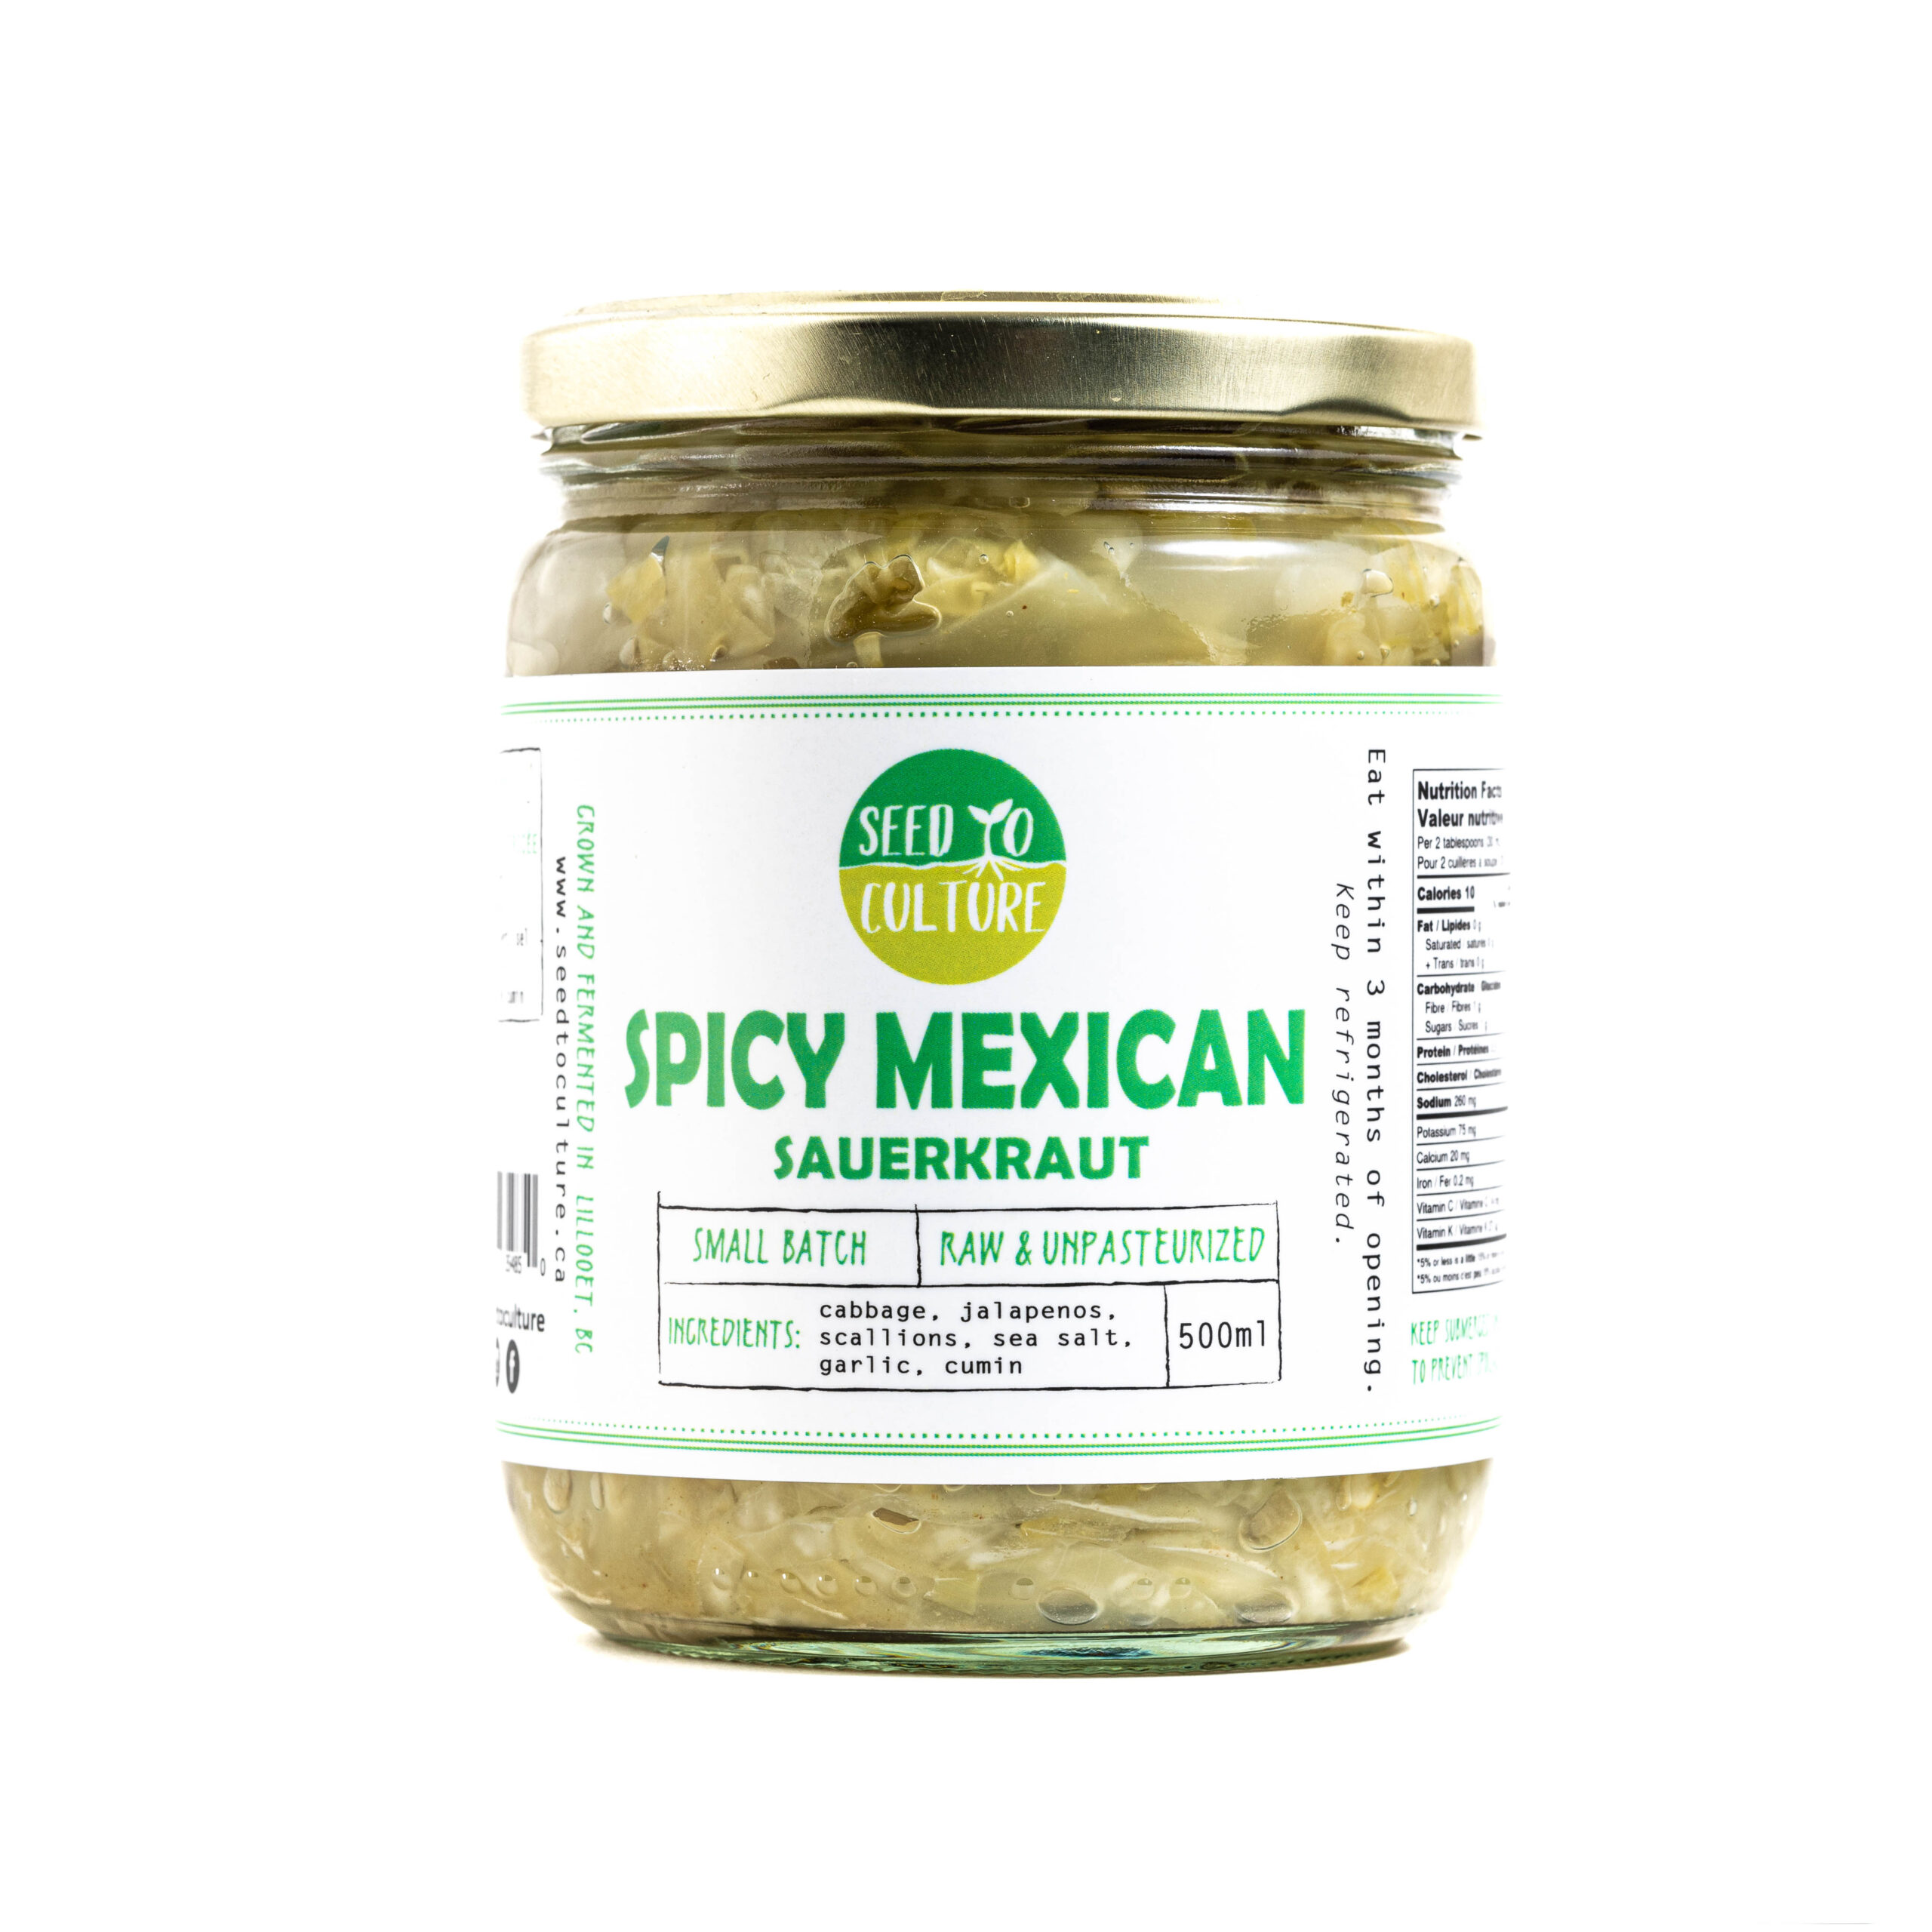 Spicy Mexican Sauerkraut